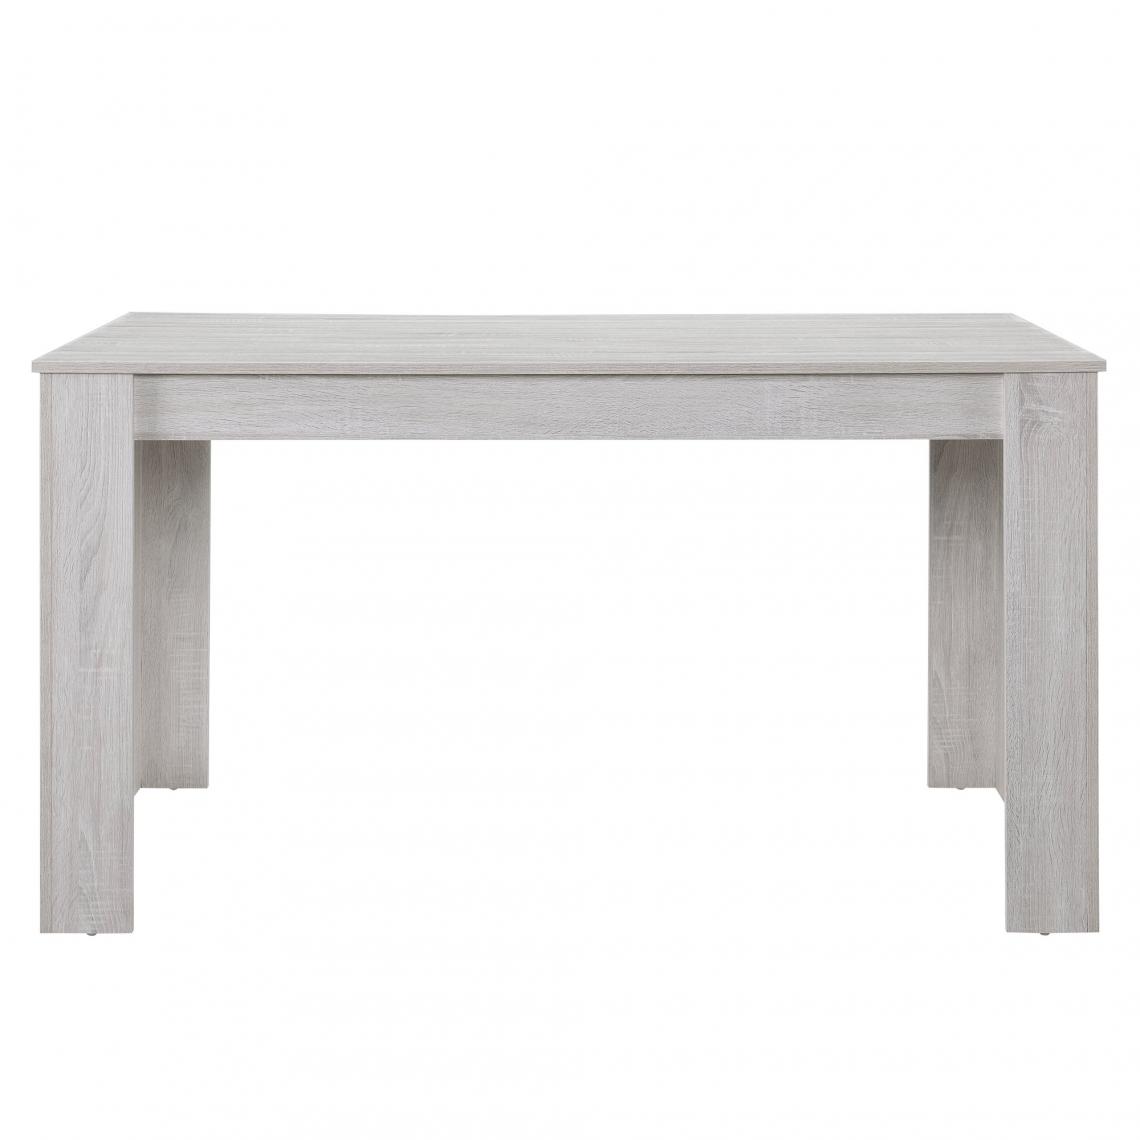 Helloshop26 - Table de salle à manger bureau robuste 140 cm couleur chêne blanc 03_0004252 - Tables à manger